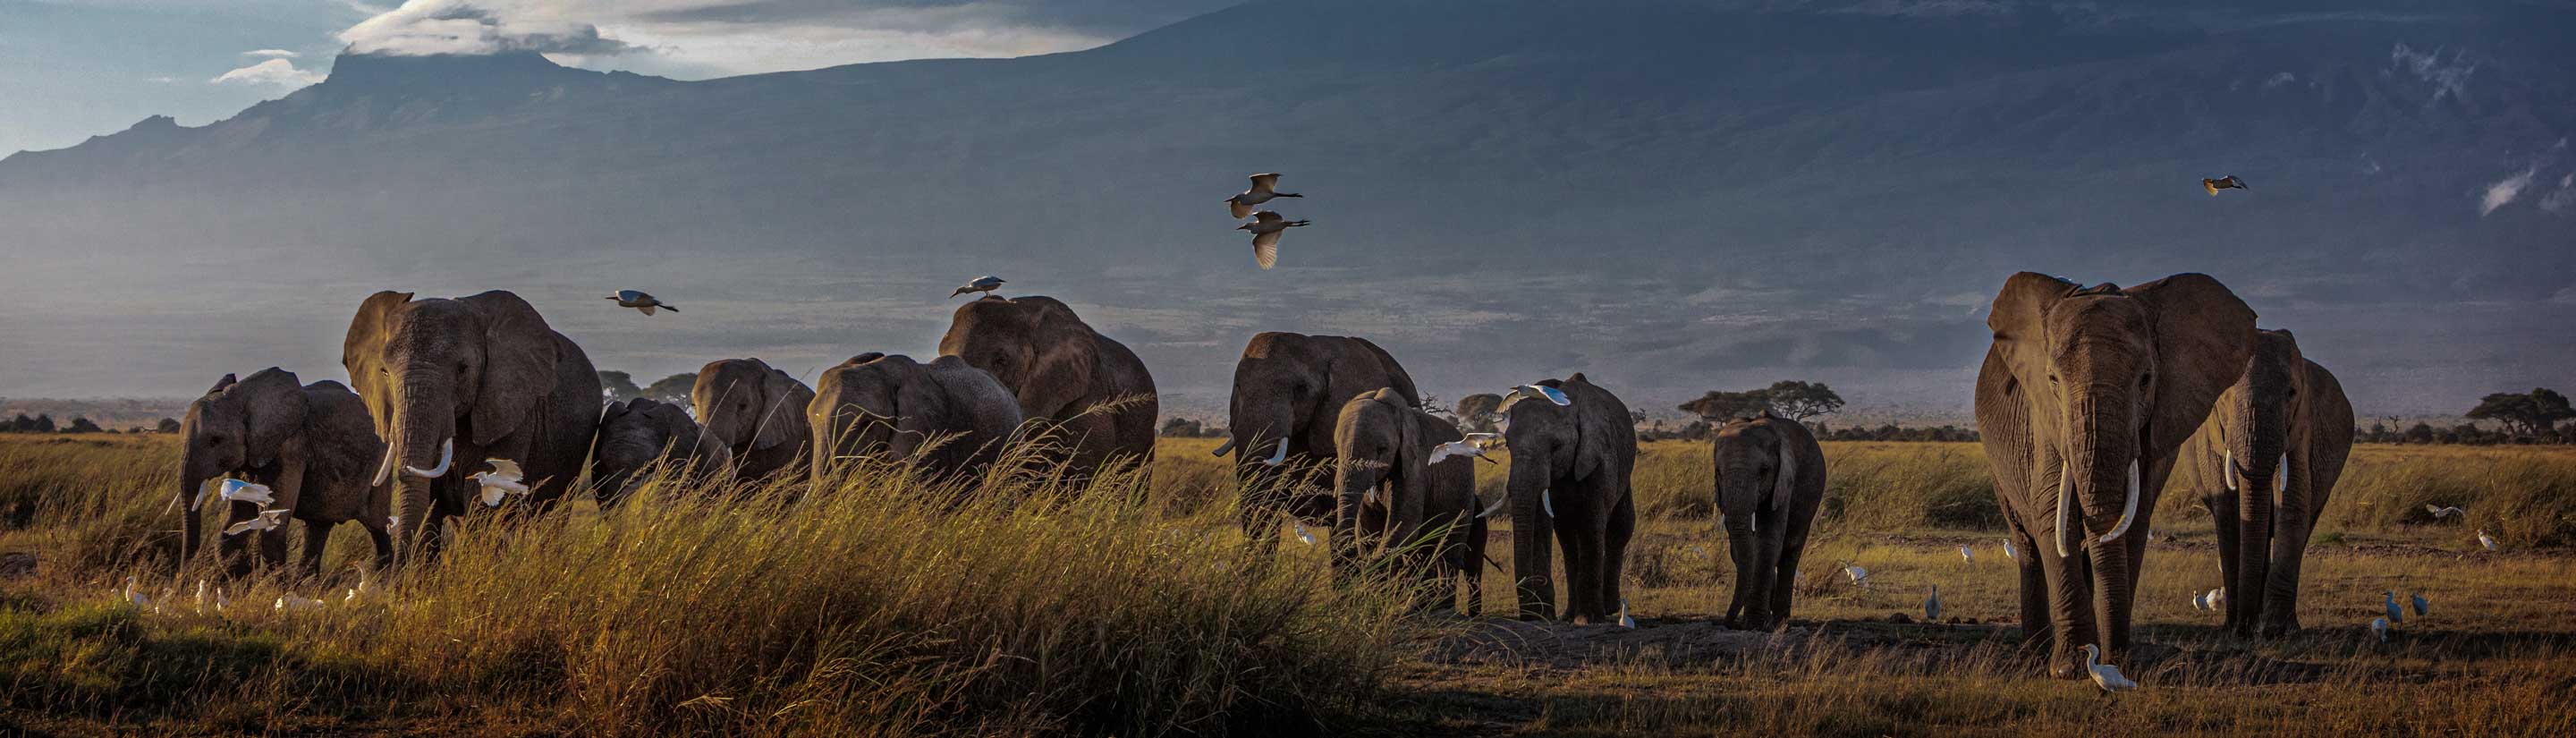 Elefanten in der Savanne in Kenia